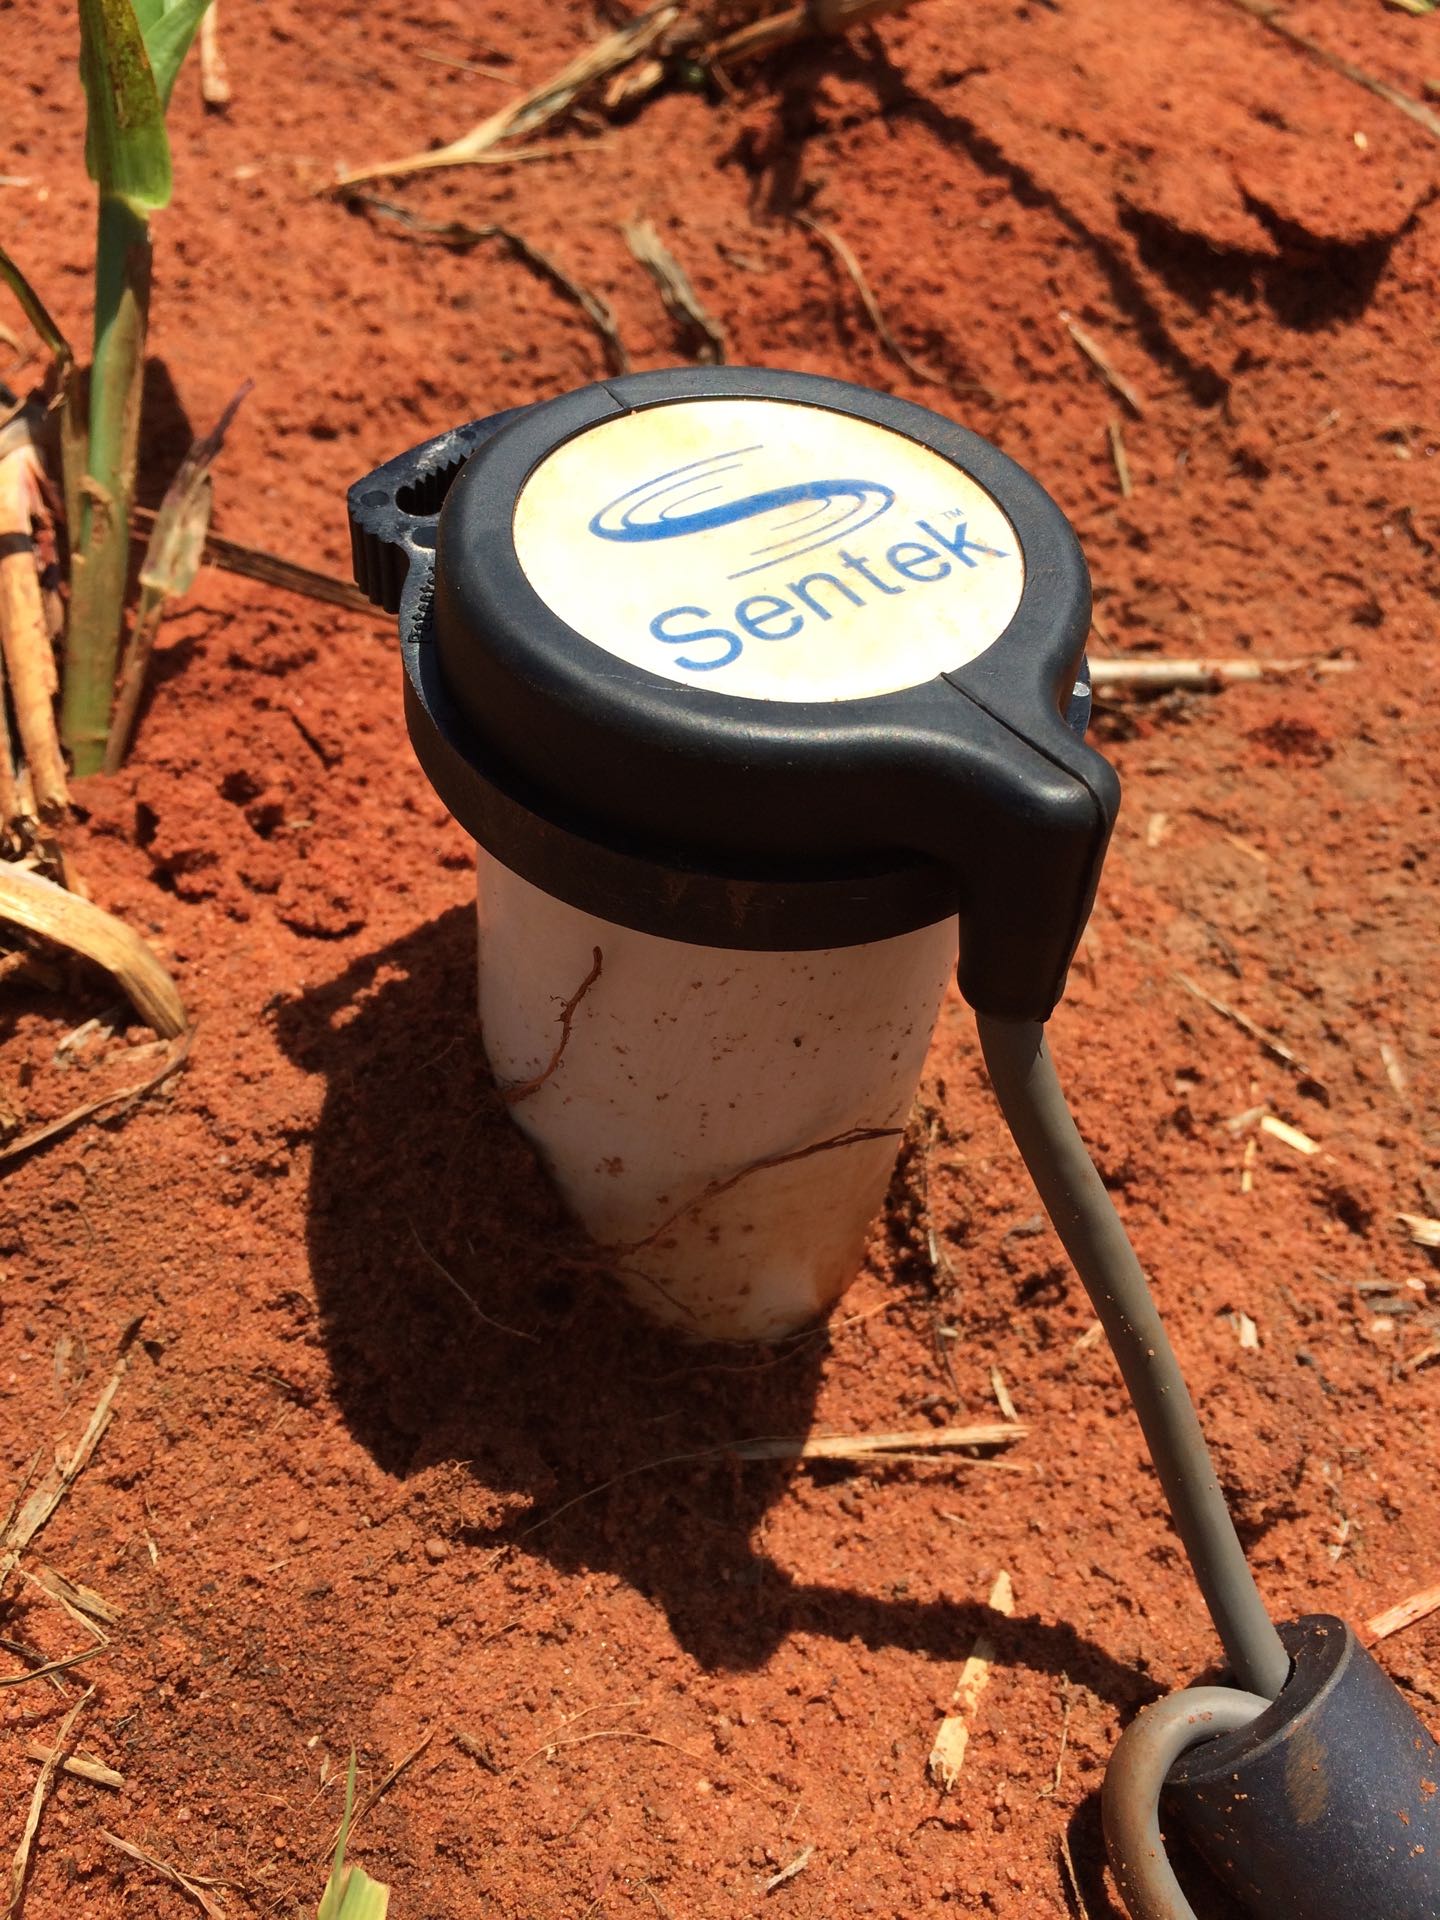 Sentek soil probe installed in the Wallal crop